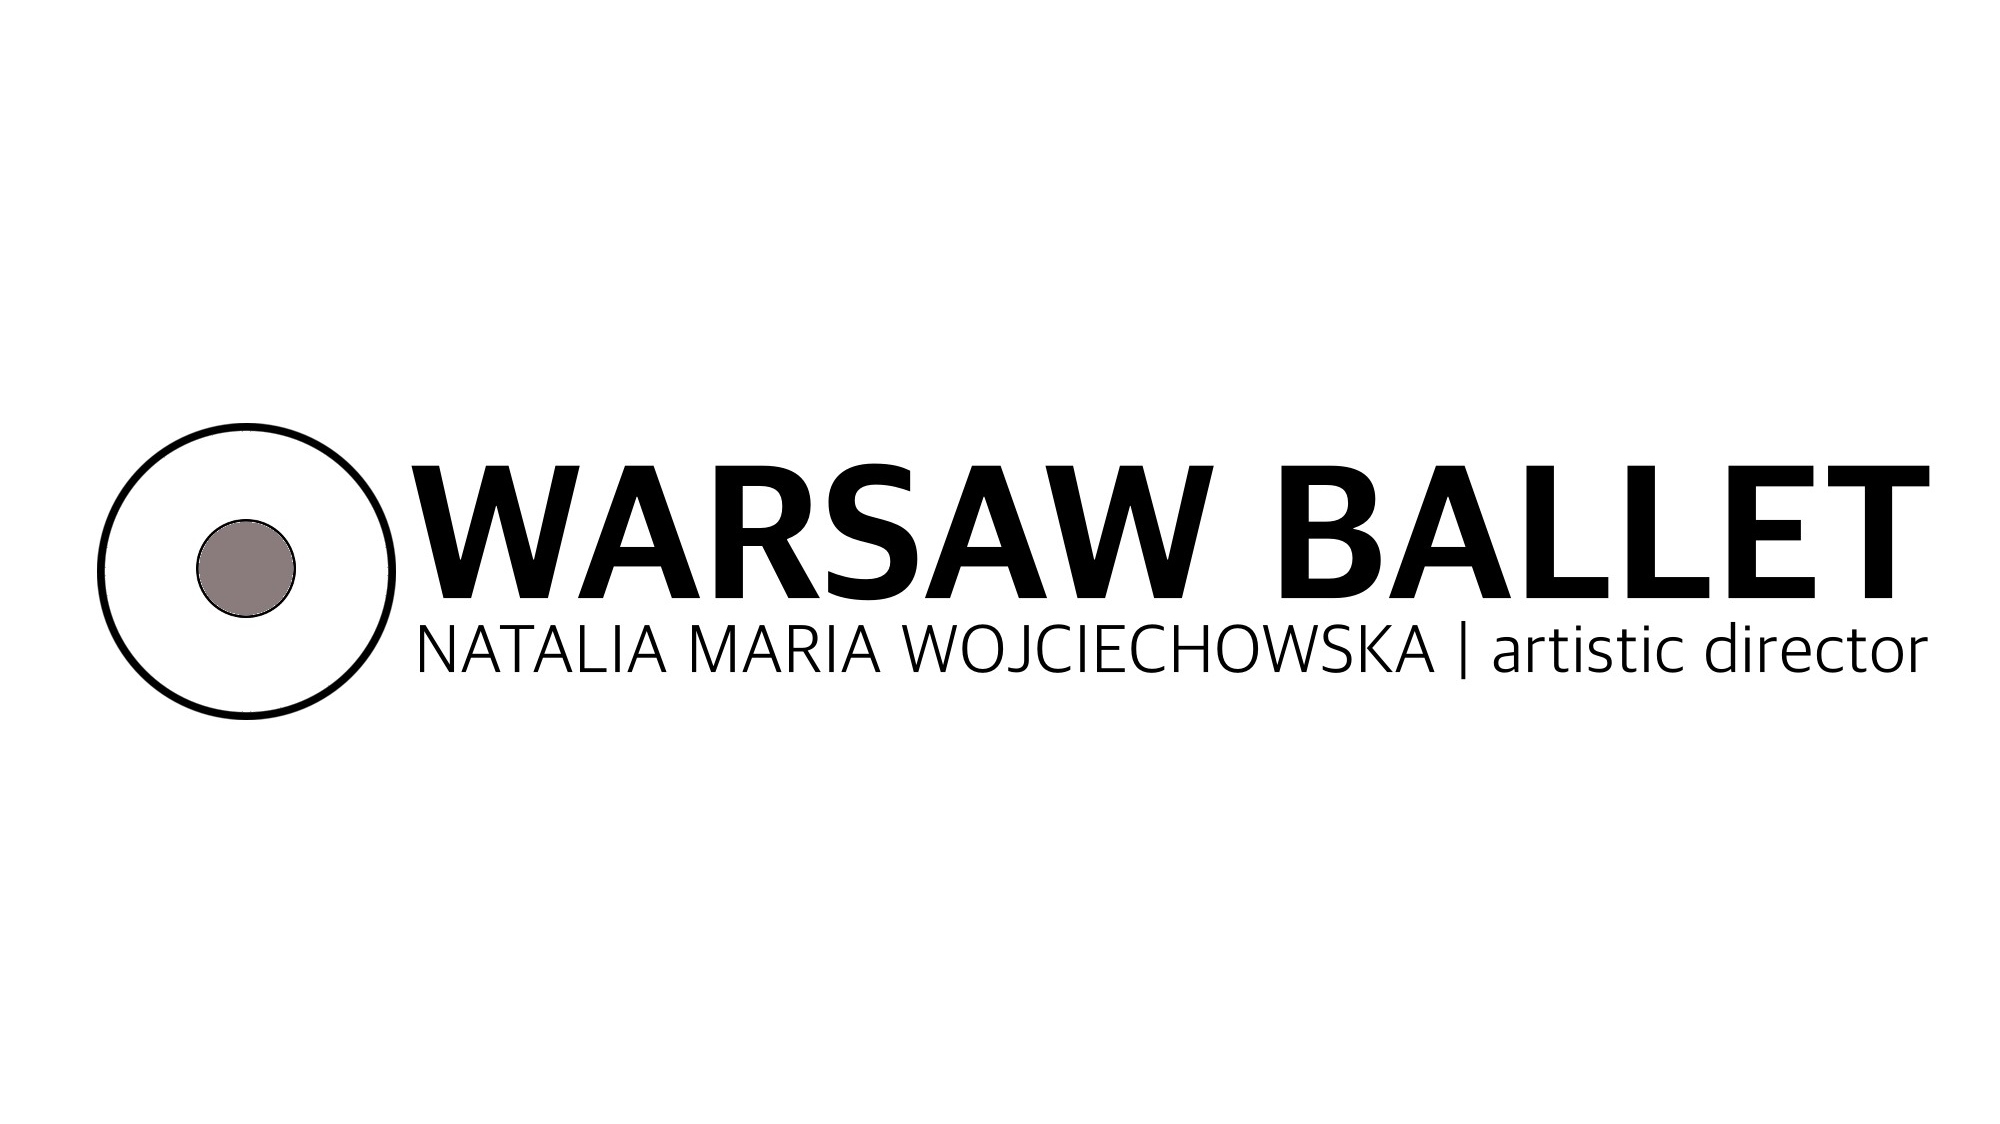 Warsaw balet logo